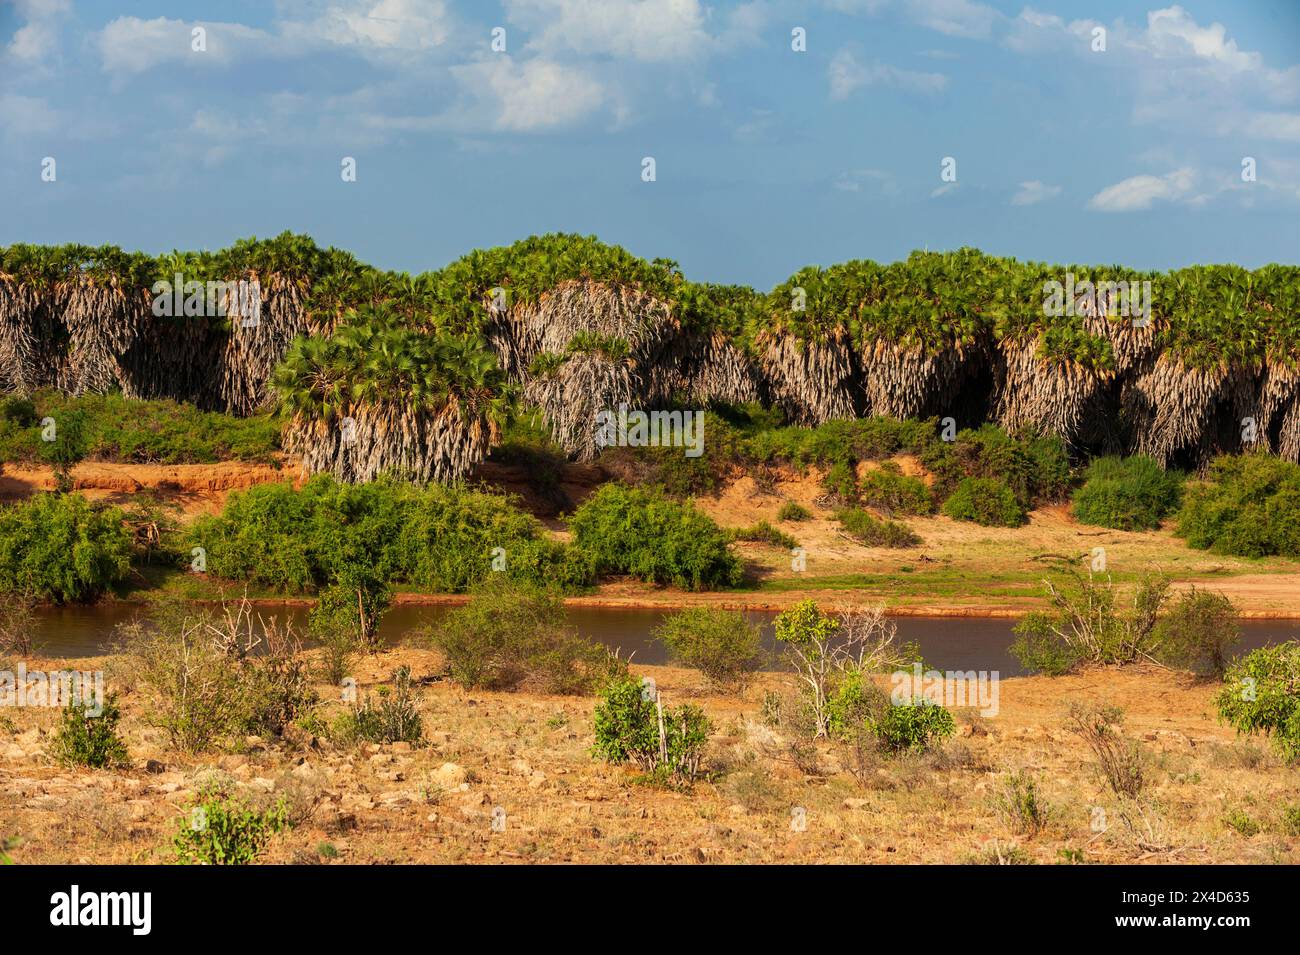 Palmiers Doum, Hyphaene coriacea, le long de la rivière Galana, Parc national de Tsavo East, Kenya. Banque D'Images